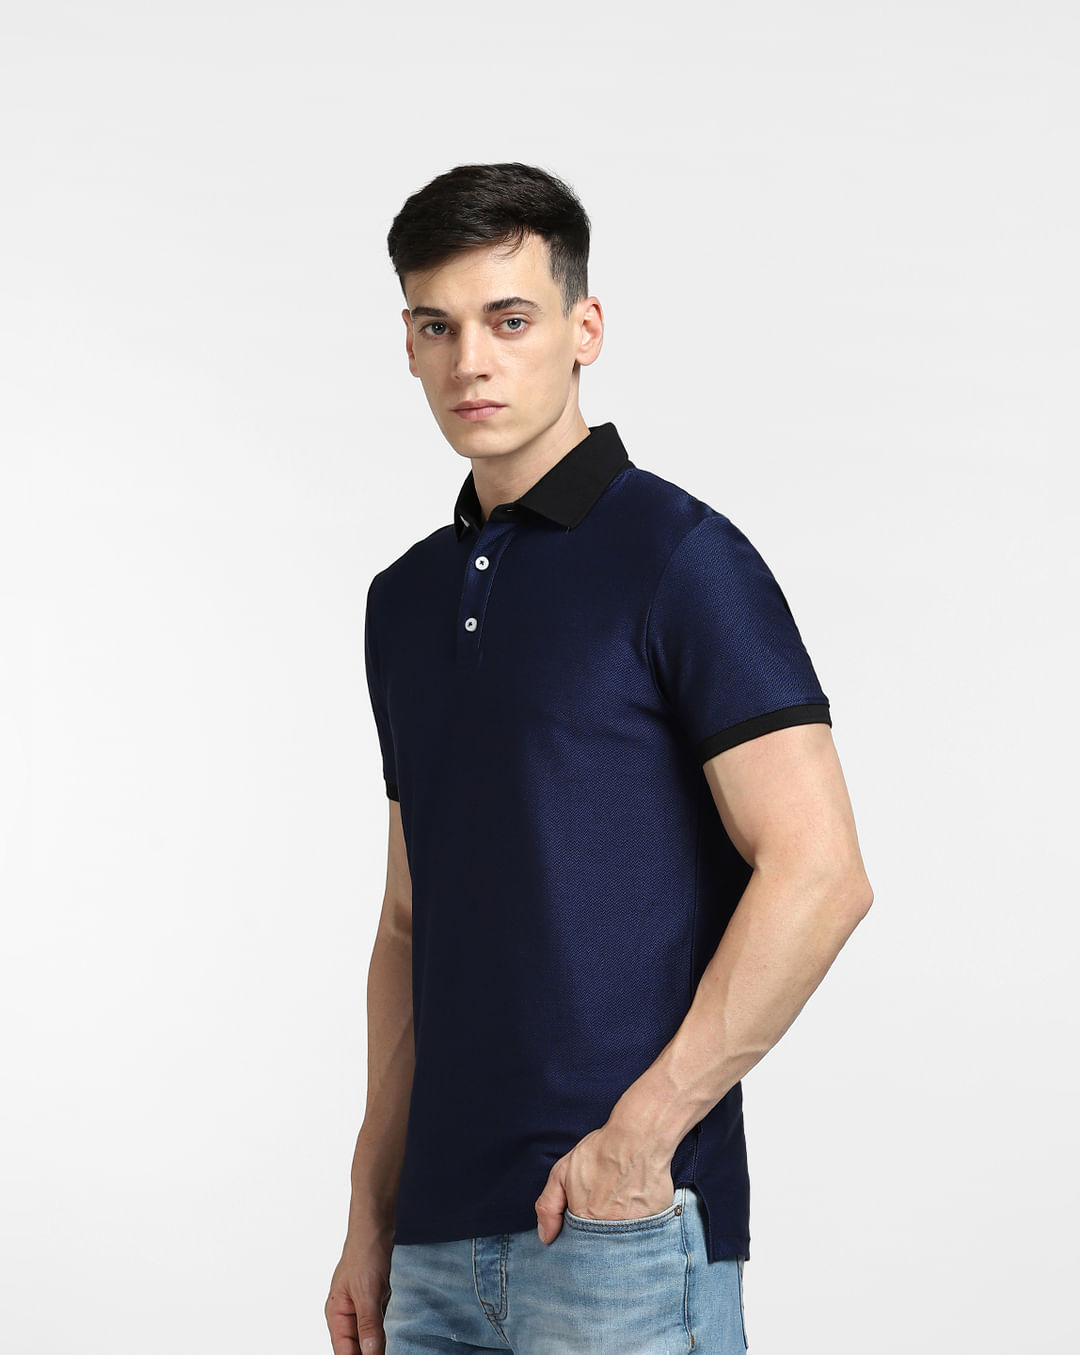 Buy Blue Polo Neck T-shirt for Men